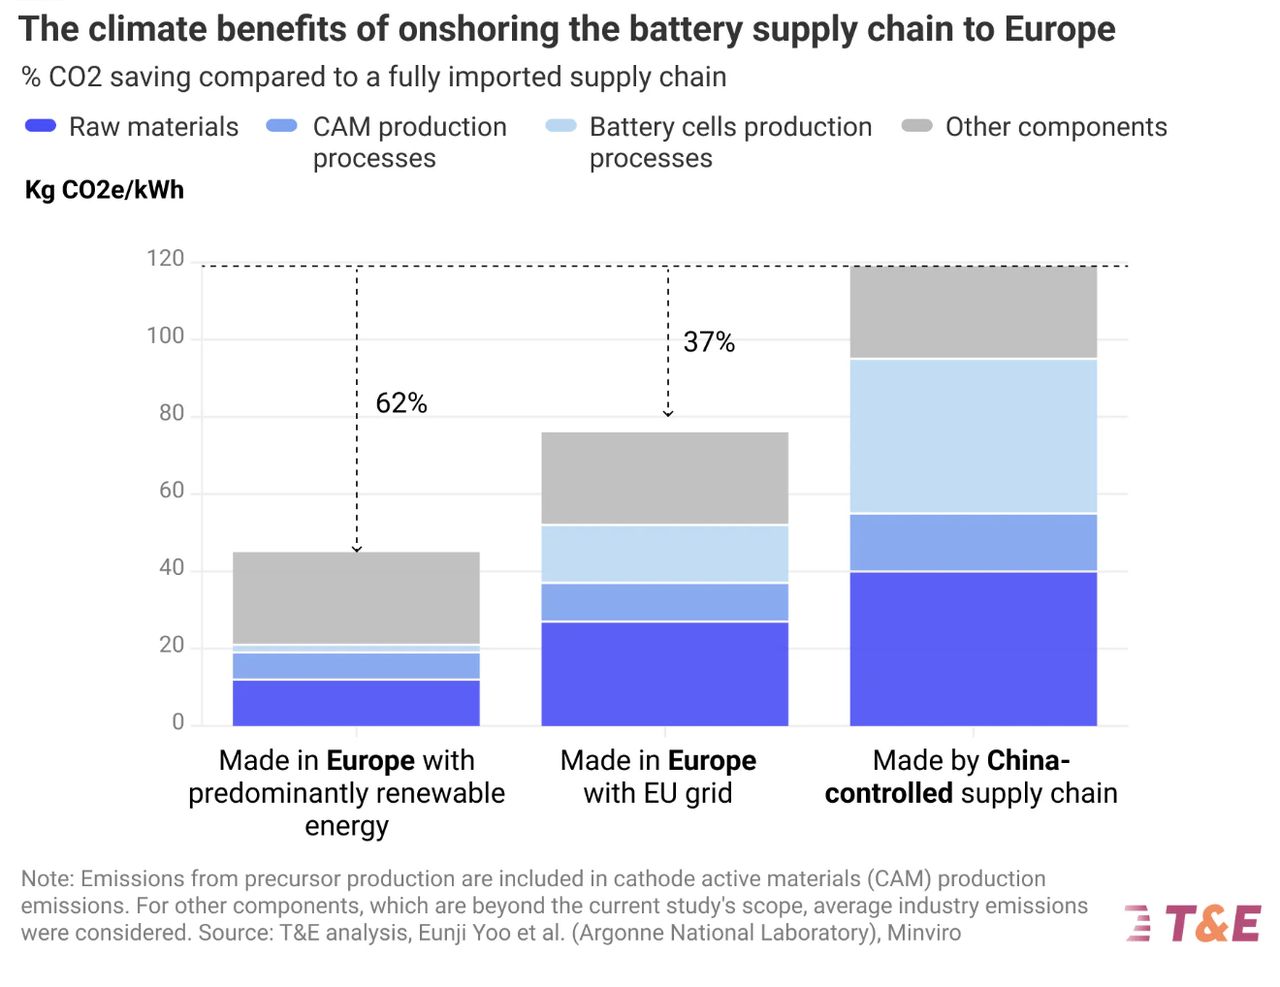 Korzyści środowiskowe wynikające z przeniesienia produkcji akumulatorów z Chin do Europy